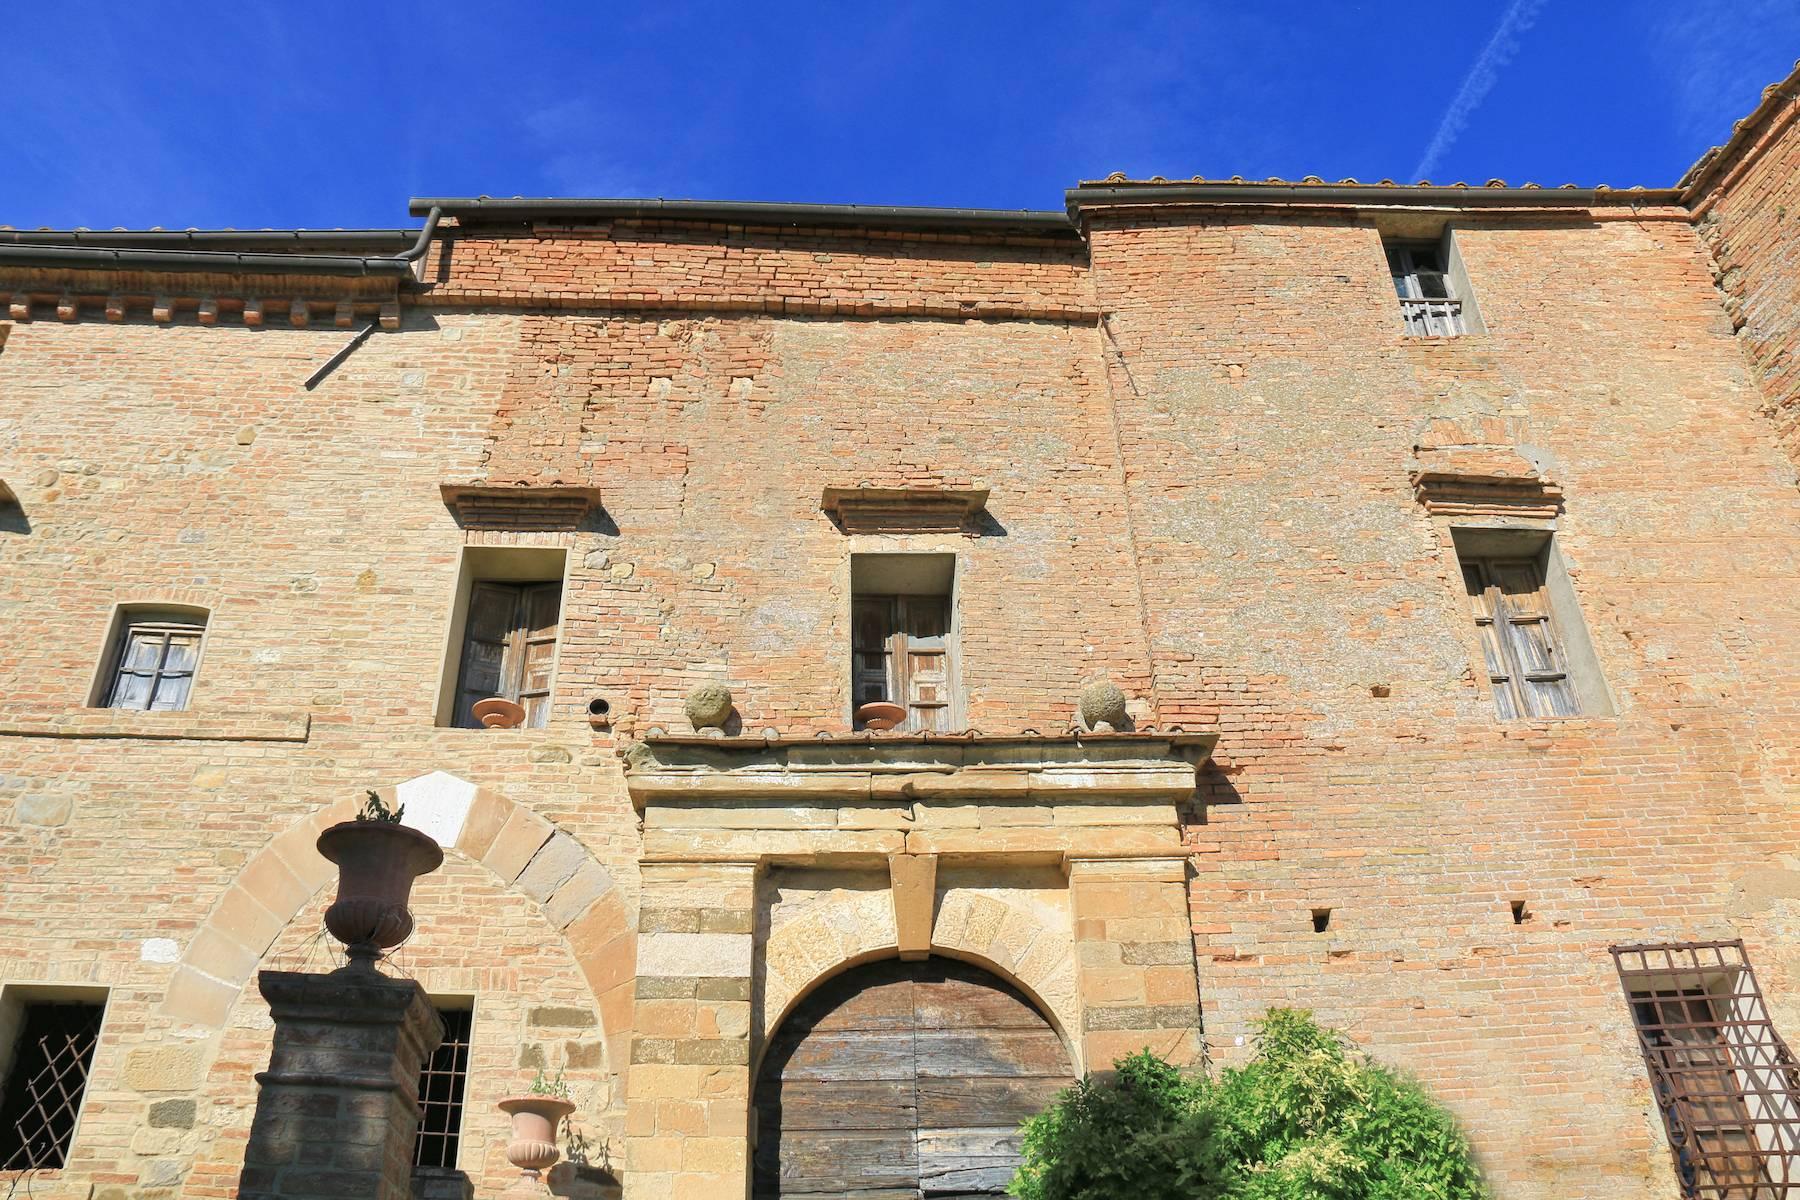 Meraviglioso castello nel cuore della Toscana - 5